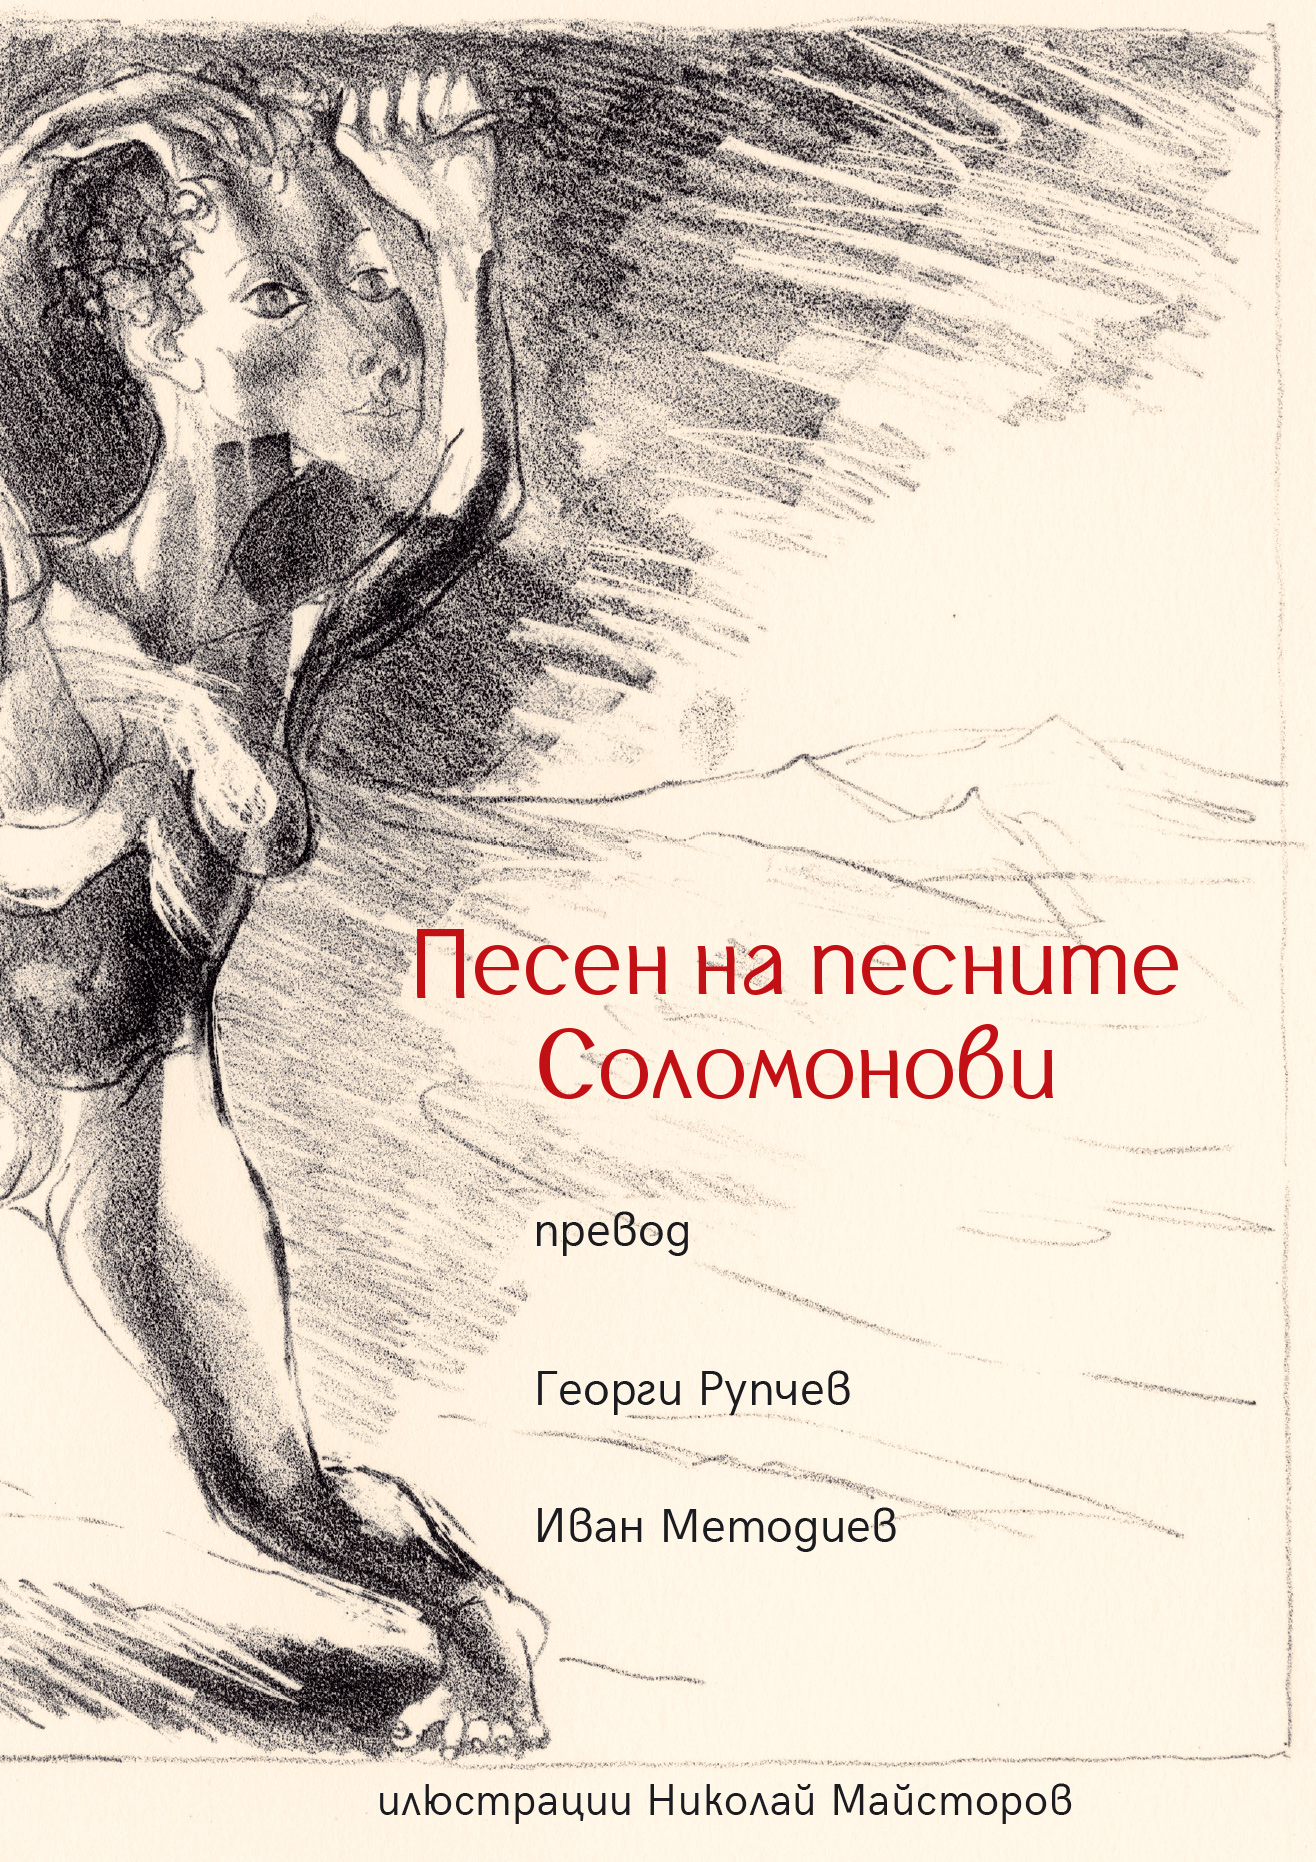 Премиера на "Песен на песните Соломонови", превод Г. Рупчев и И. Методиев